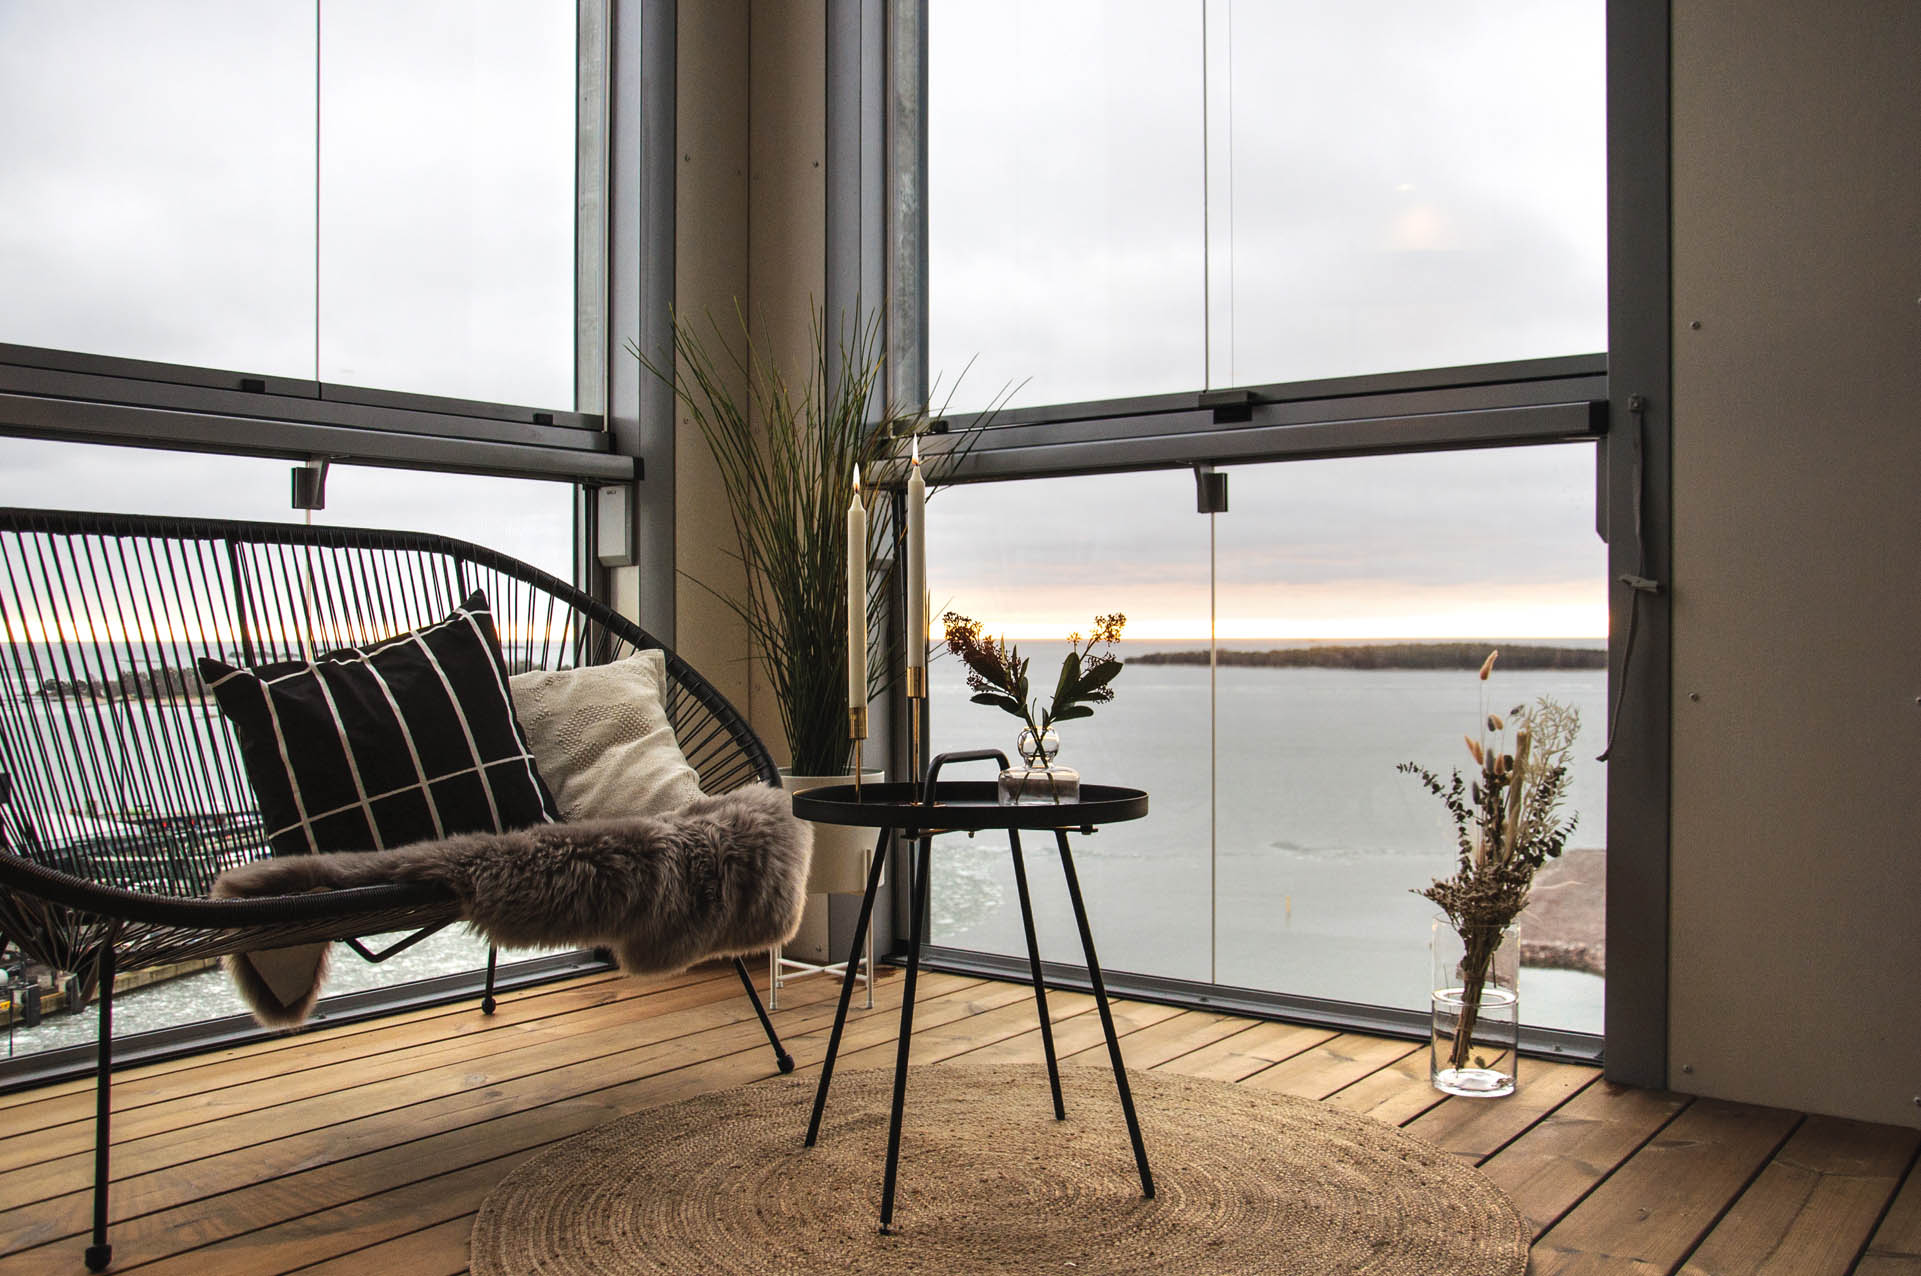 Possibilité de s'asseoir sur un balcon vitré avec vue sur la mer